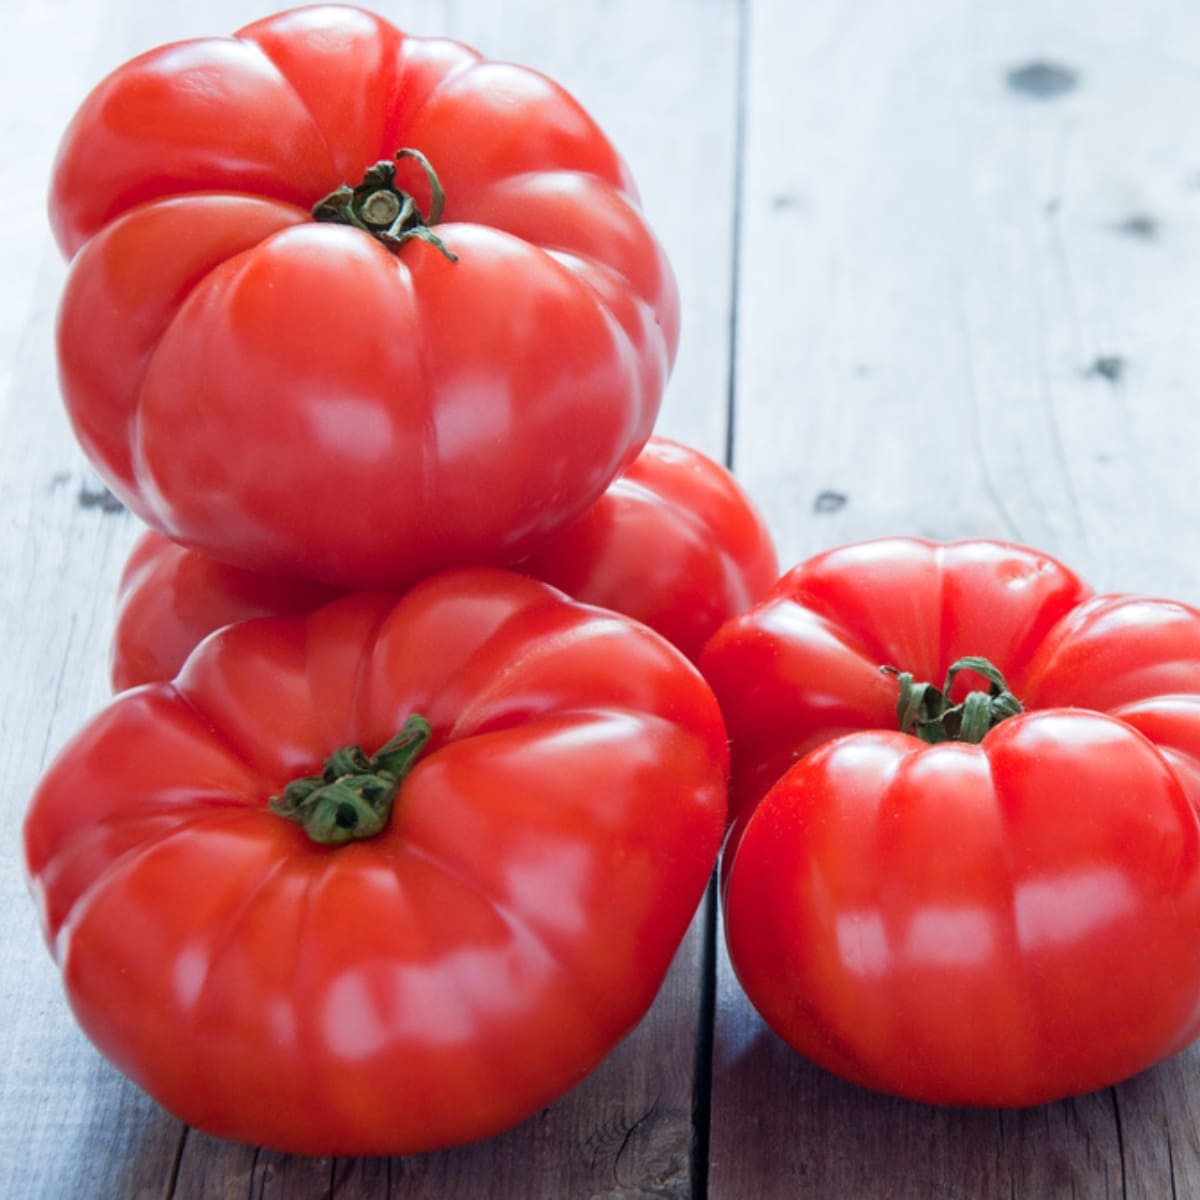 Ripe Heirloom Tomatoes
